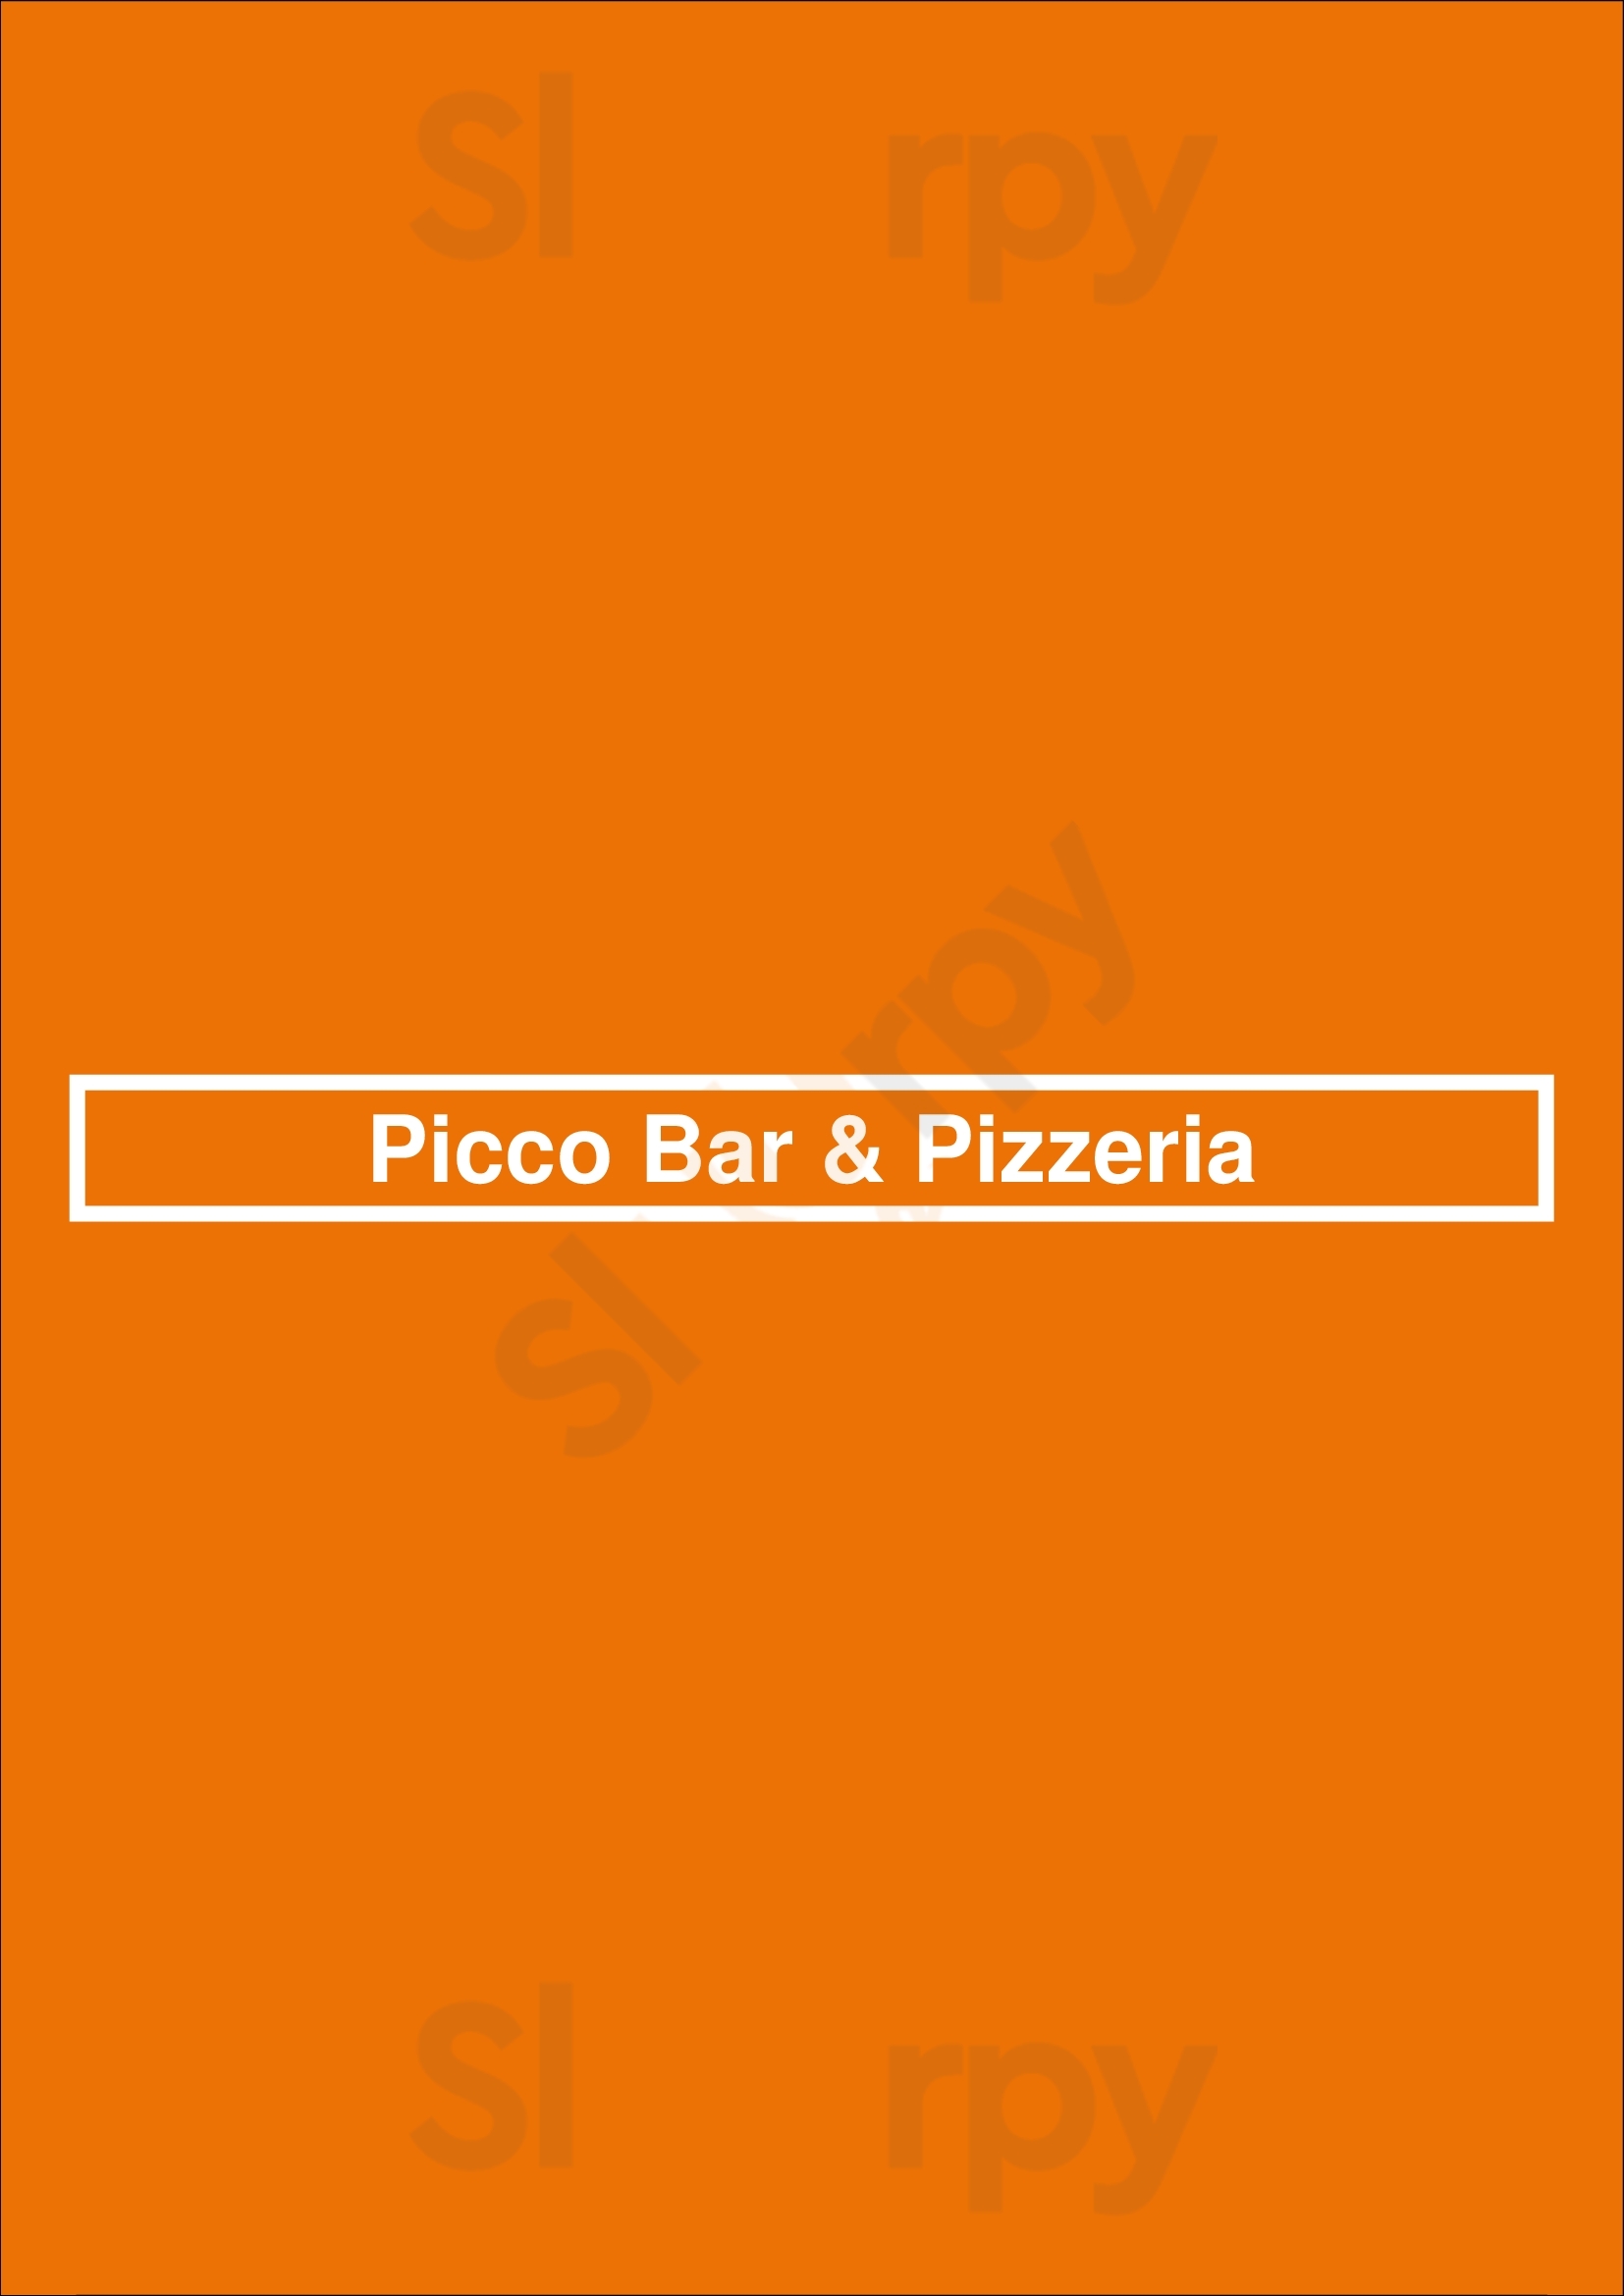 Picco Bar & Pizzeria Darlington Menu - 1